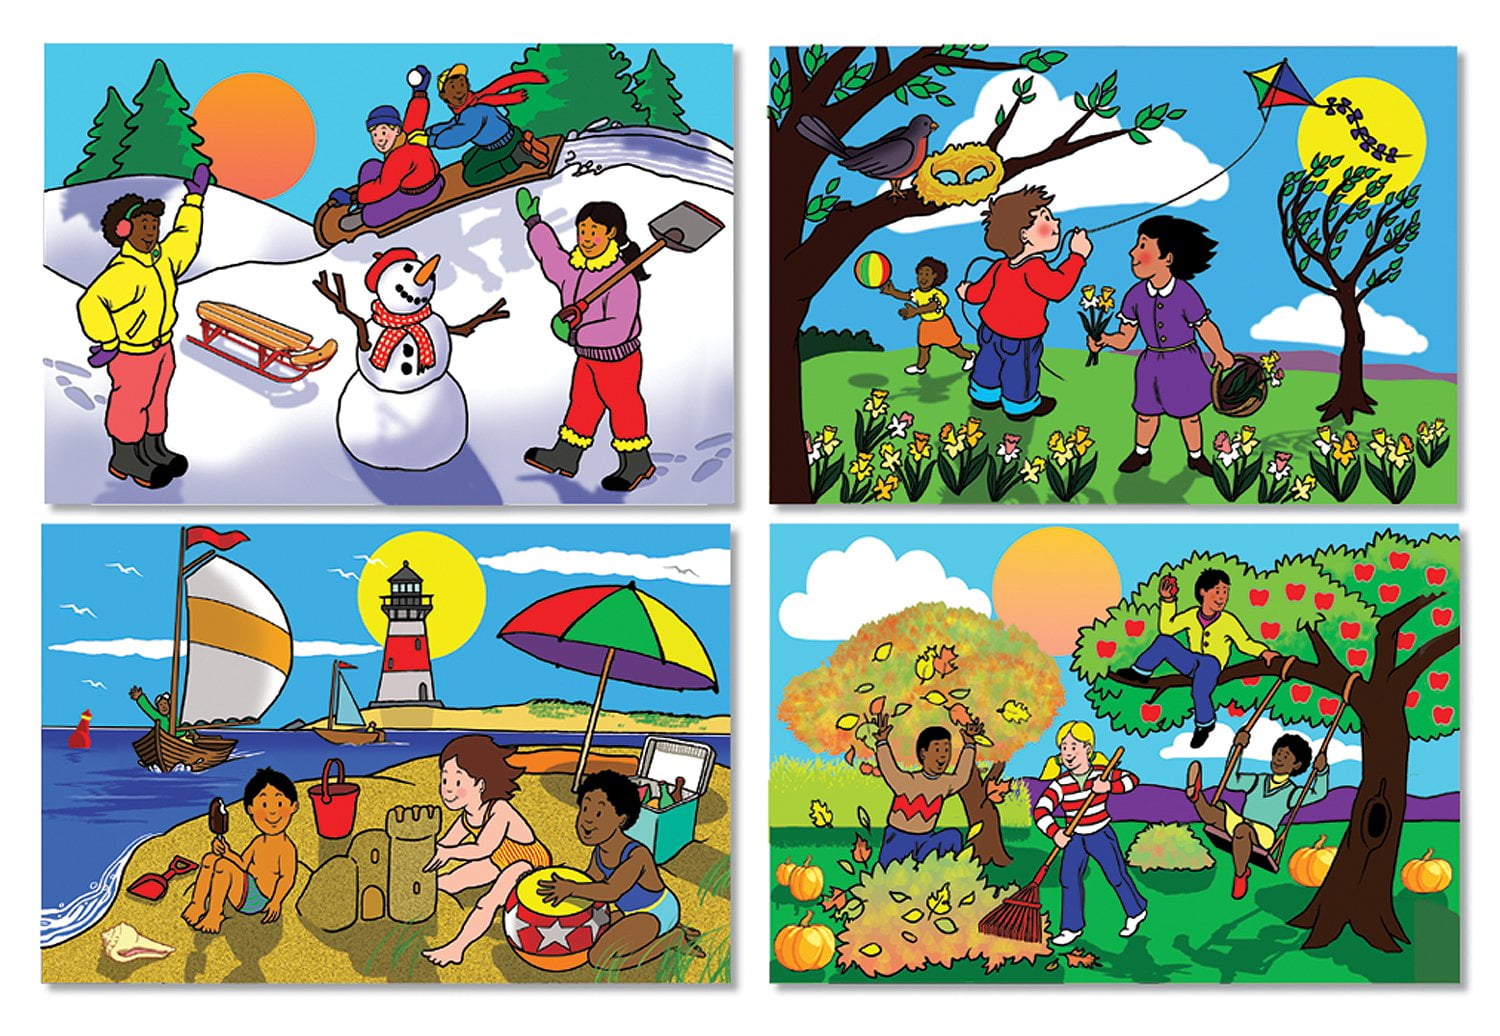 Seasons youtube. Изображения времен года для детей. Иллюстрации с изображением времен года. Картинки временаода. Времена года для дошкольников.